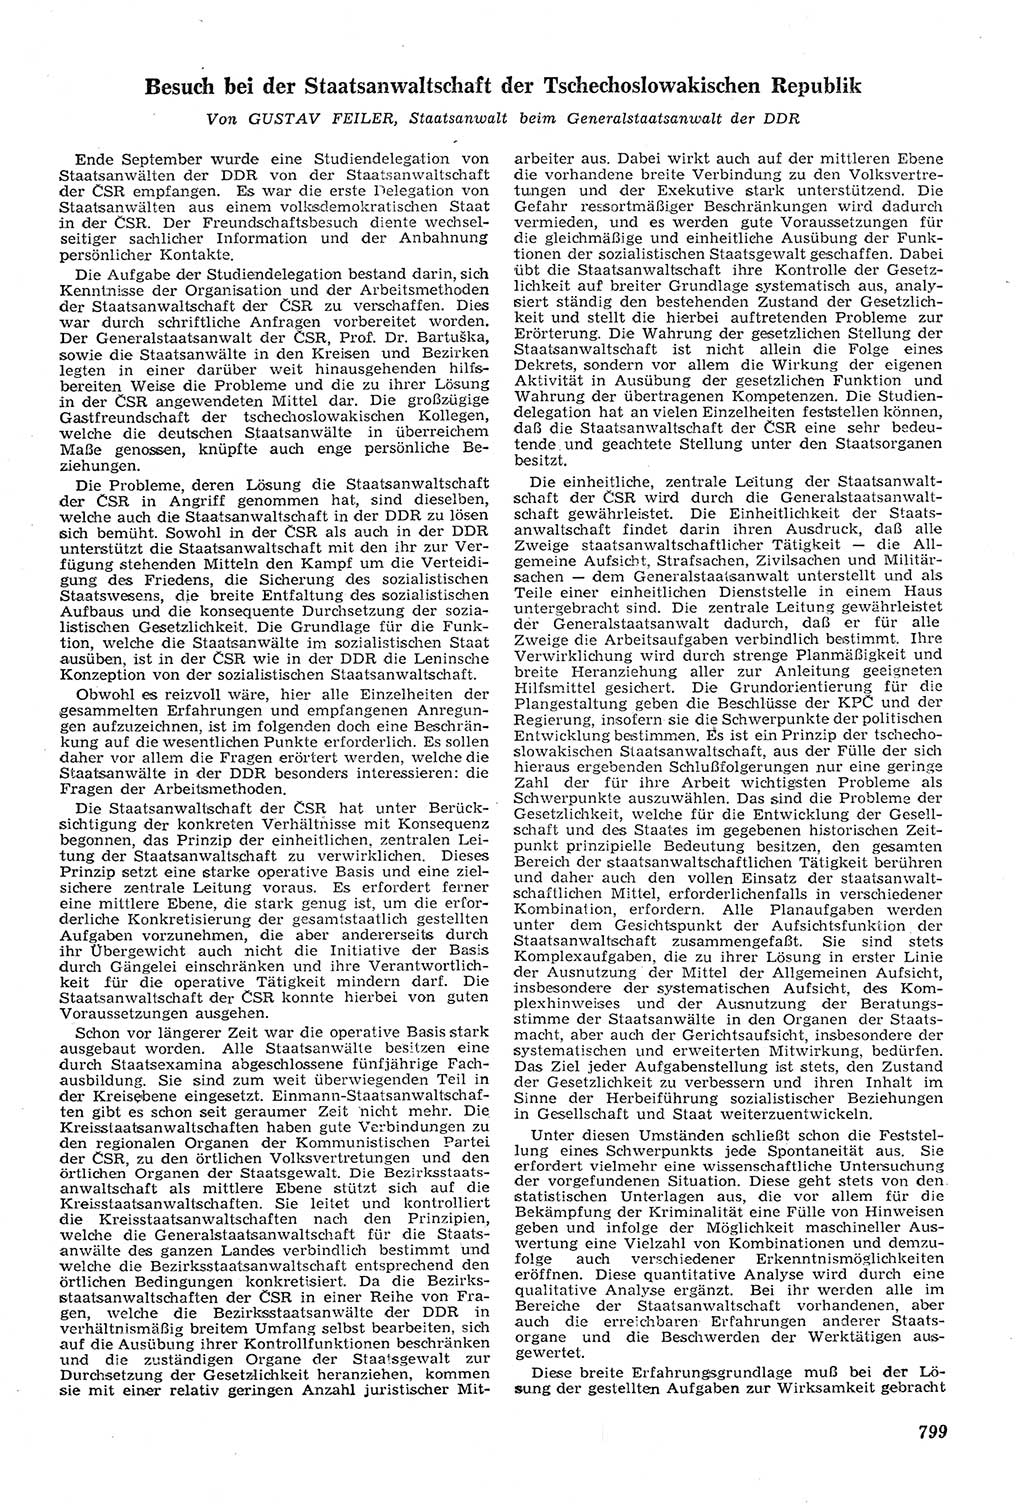 Neue Justiz (NJ), Zeitschrift für Recht und Rechtswissenschaft [Deutsche Demokratische Republik (DDR)], 11. Jahrgang 1957, Seite 799 (NJ DDR 1957, S. 799)